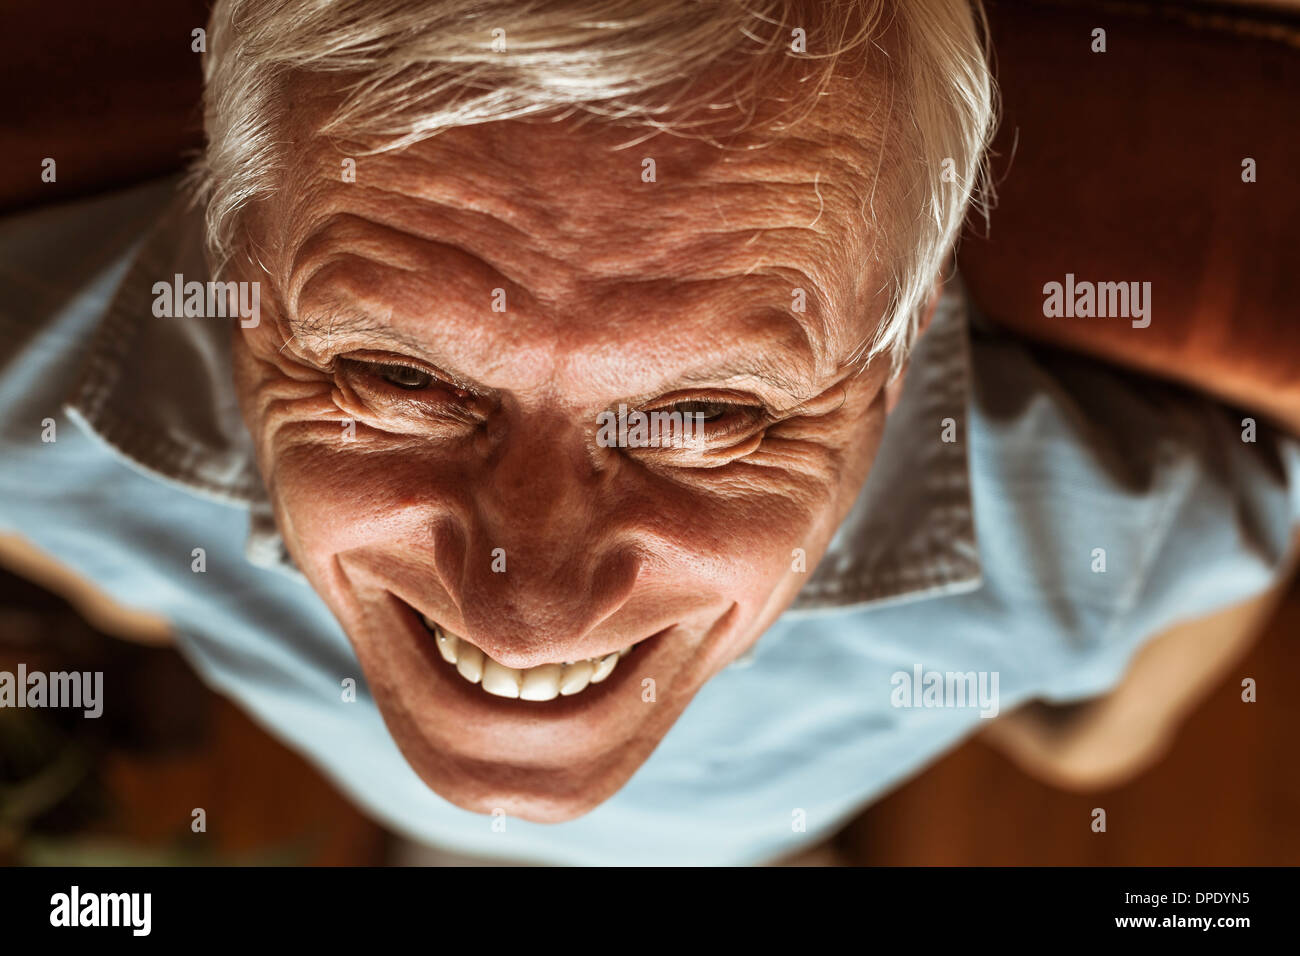 Closeup of senior man face toothy laugh Stock Photo